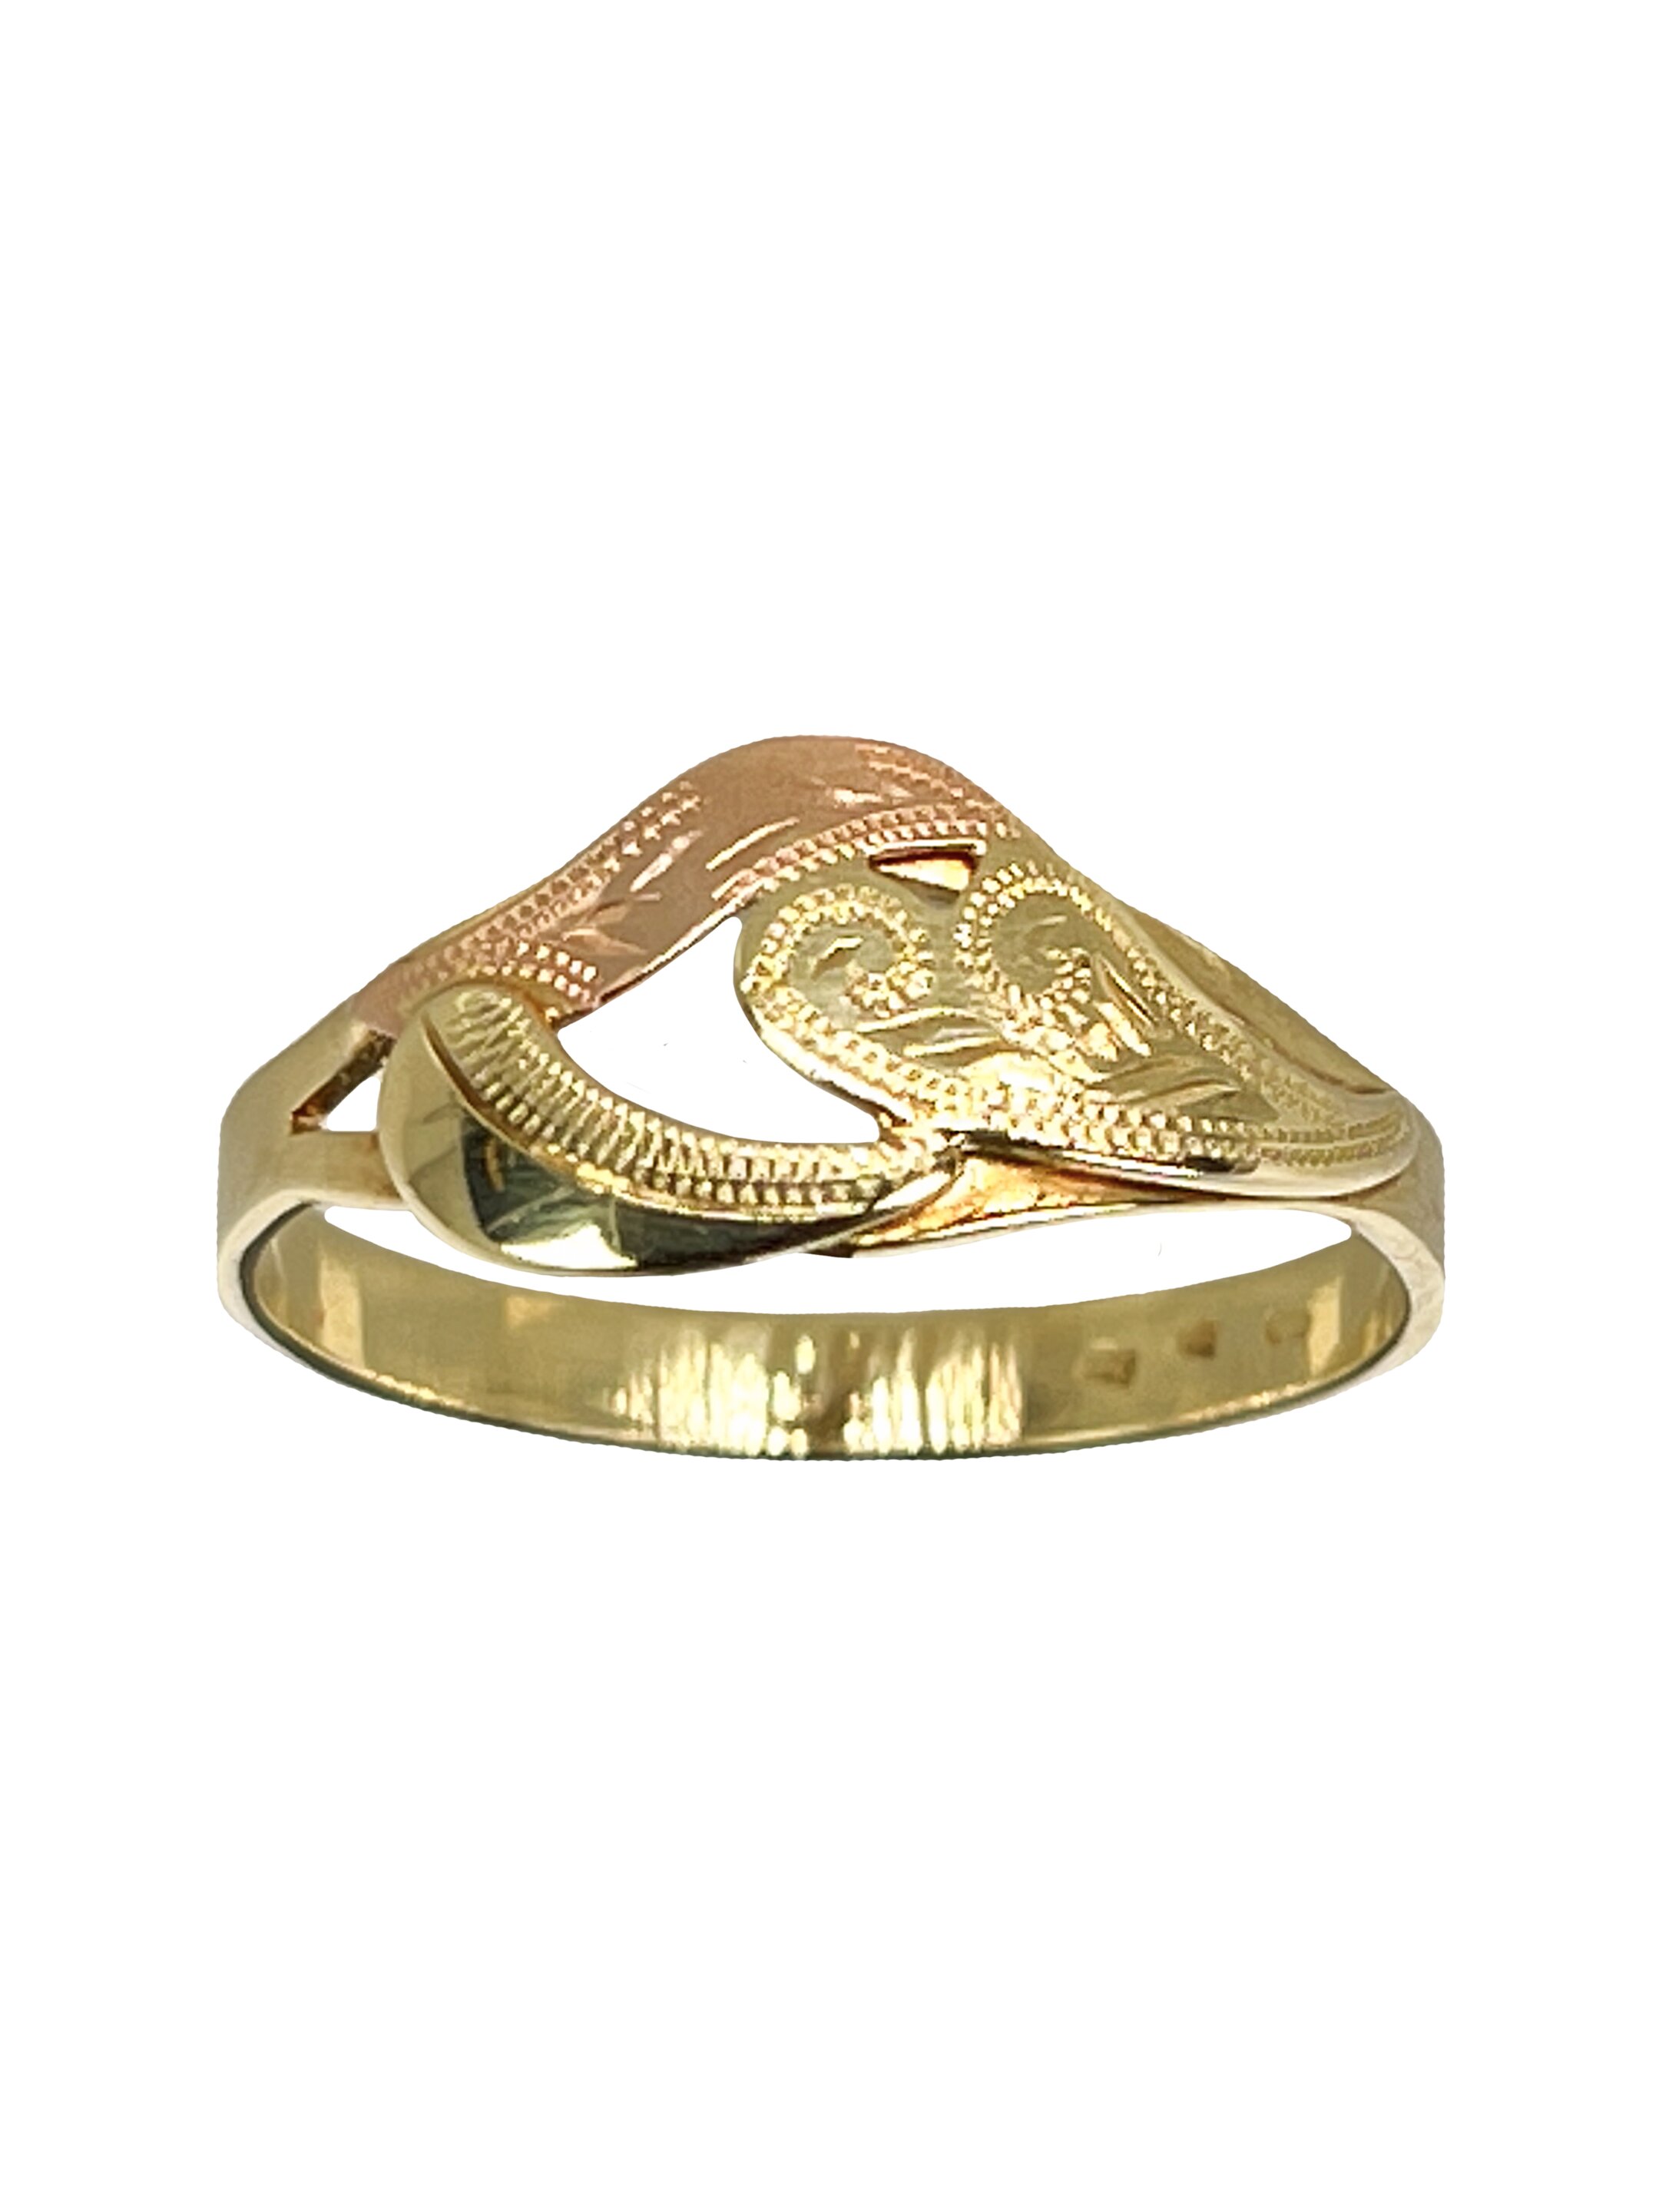 Zelta kombinācijas gredzens ar gravējumu